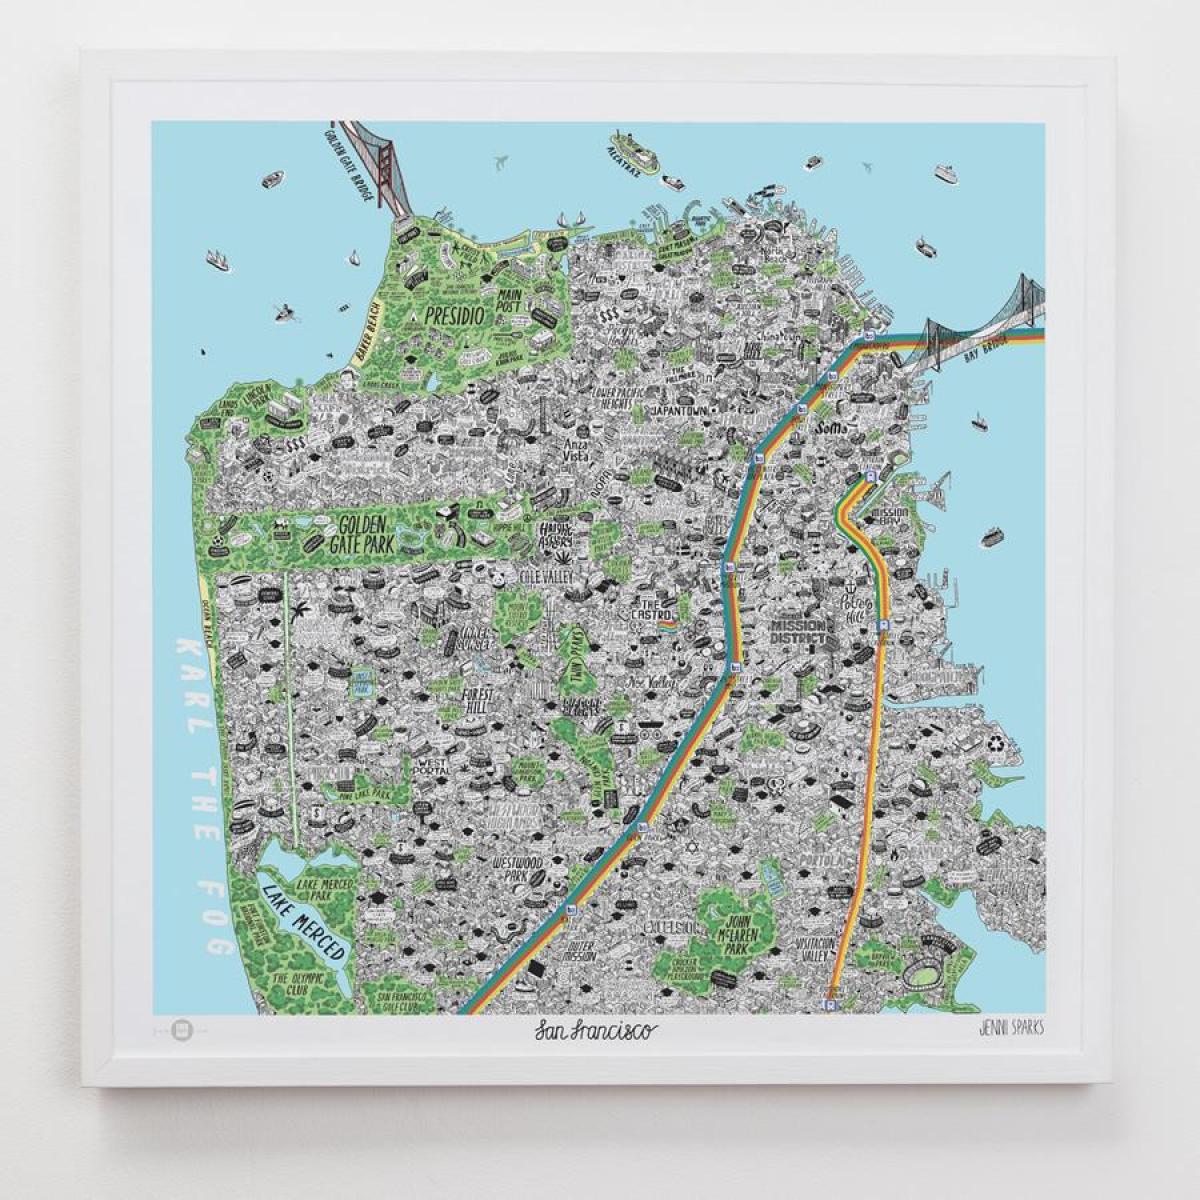 Karta San Francisco umjetnosti